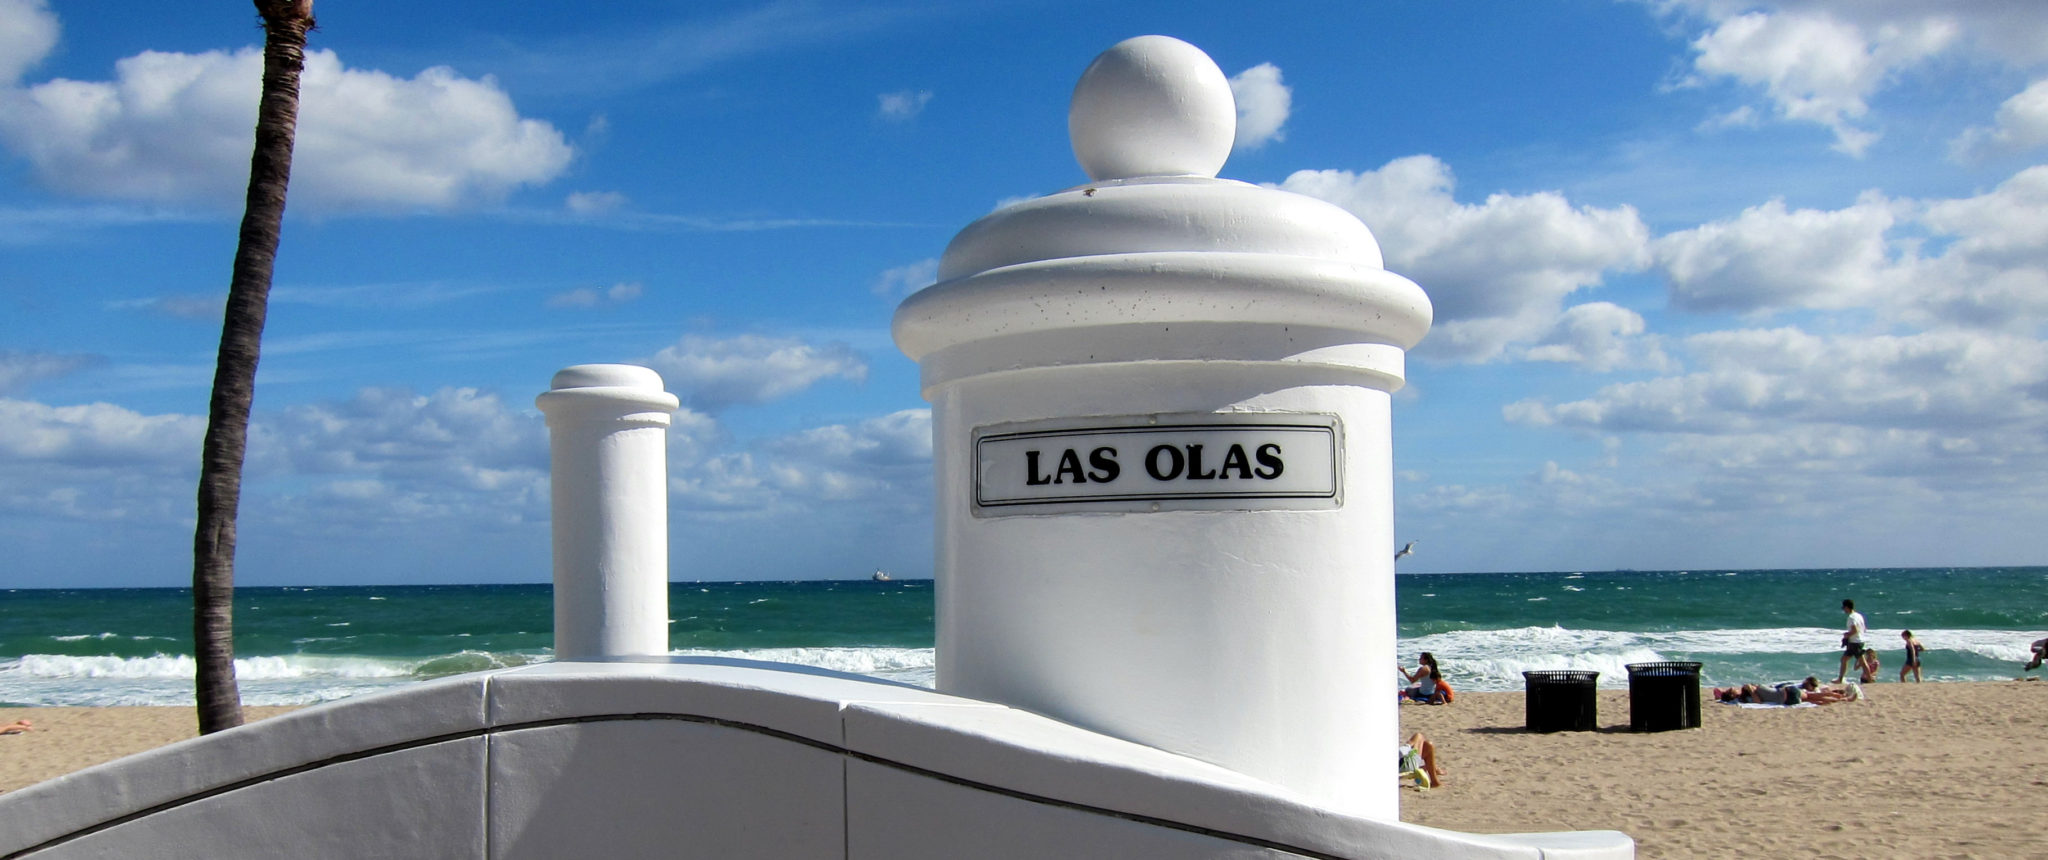 Las Olas Boulevard and the Atlantic Ocean